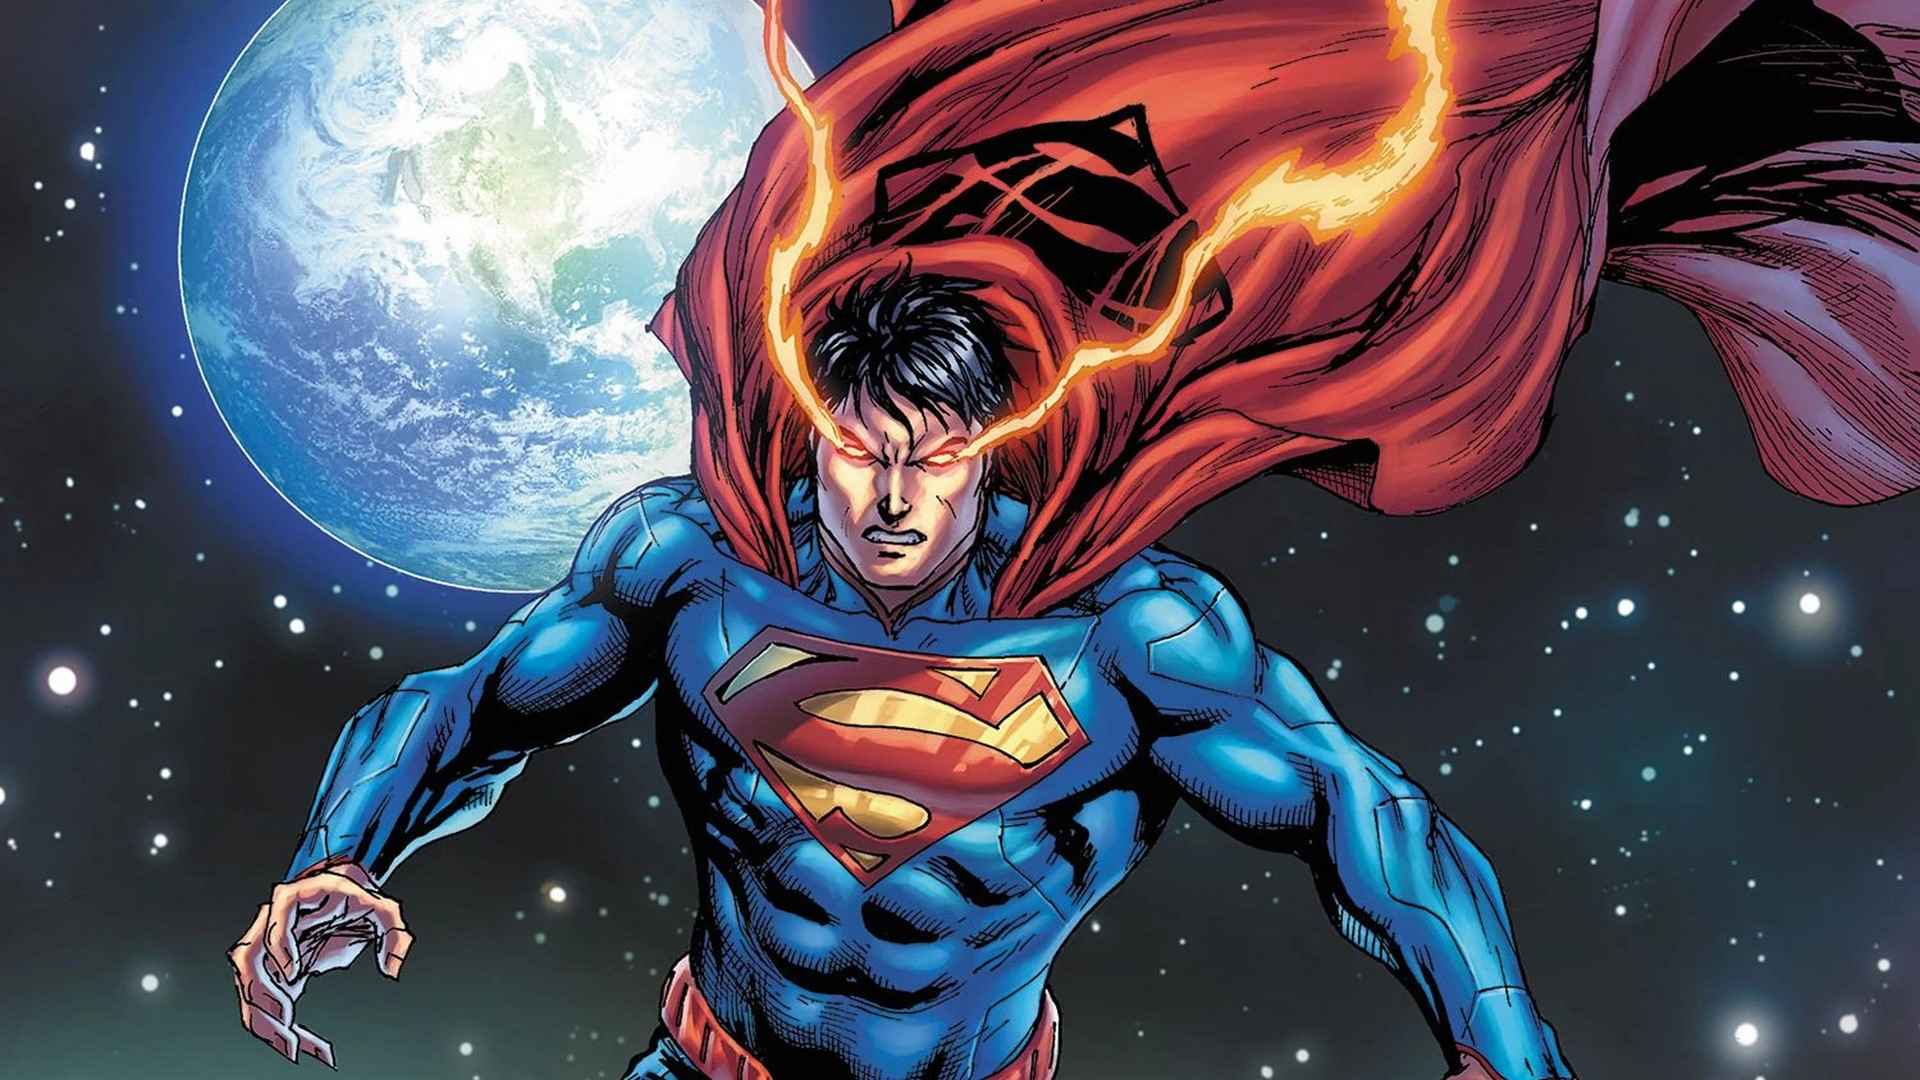 ۵ داستان از سوپرمن جوان مناسب دنیای جیمز گان